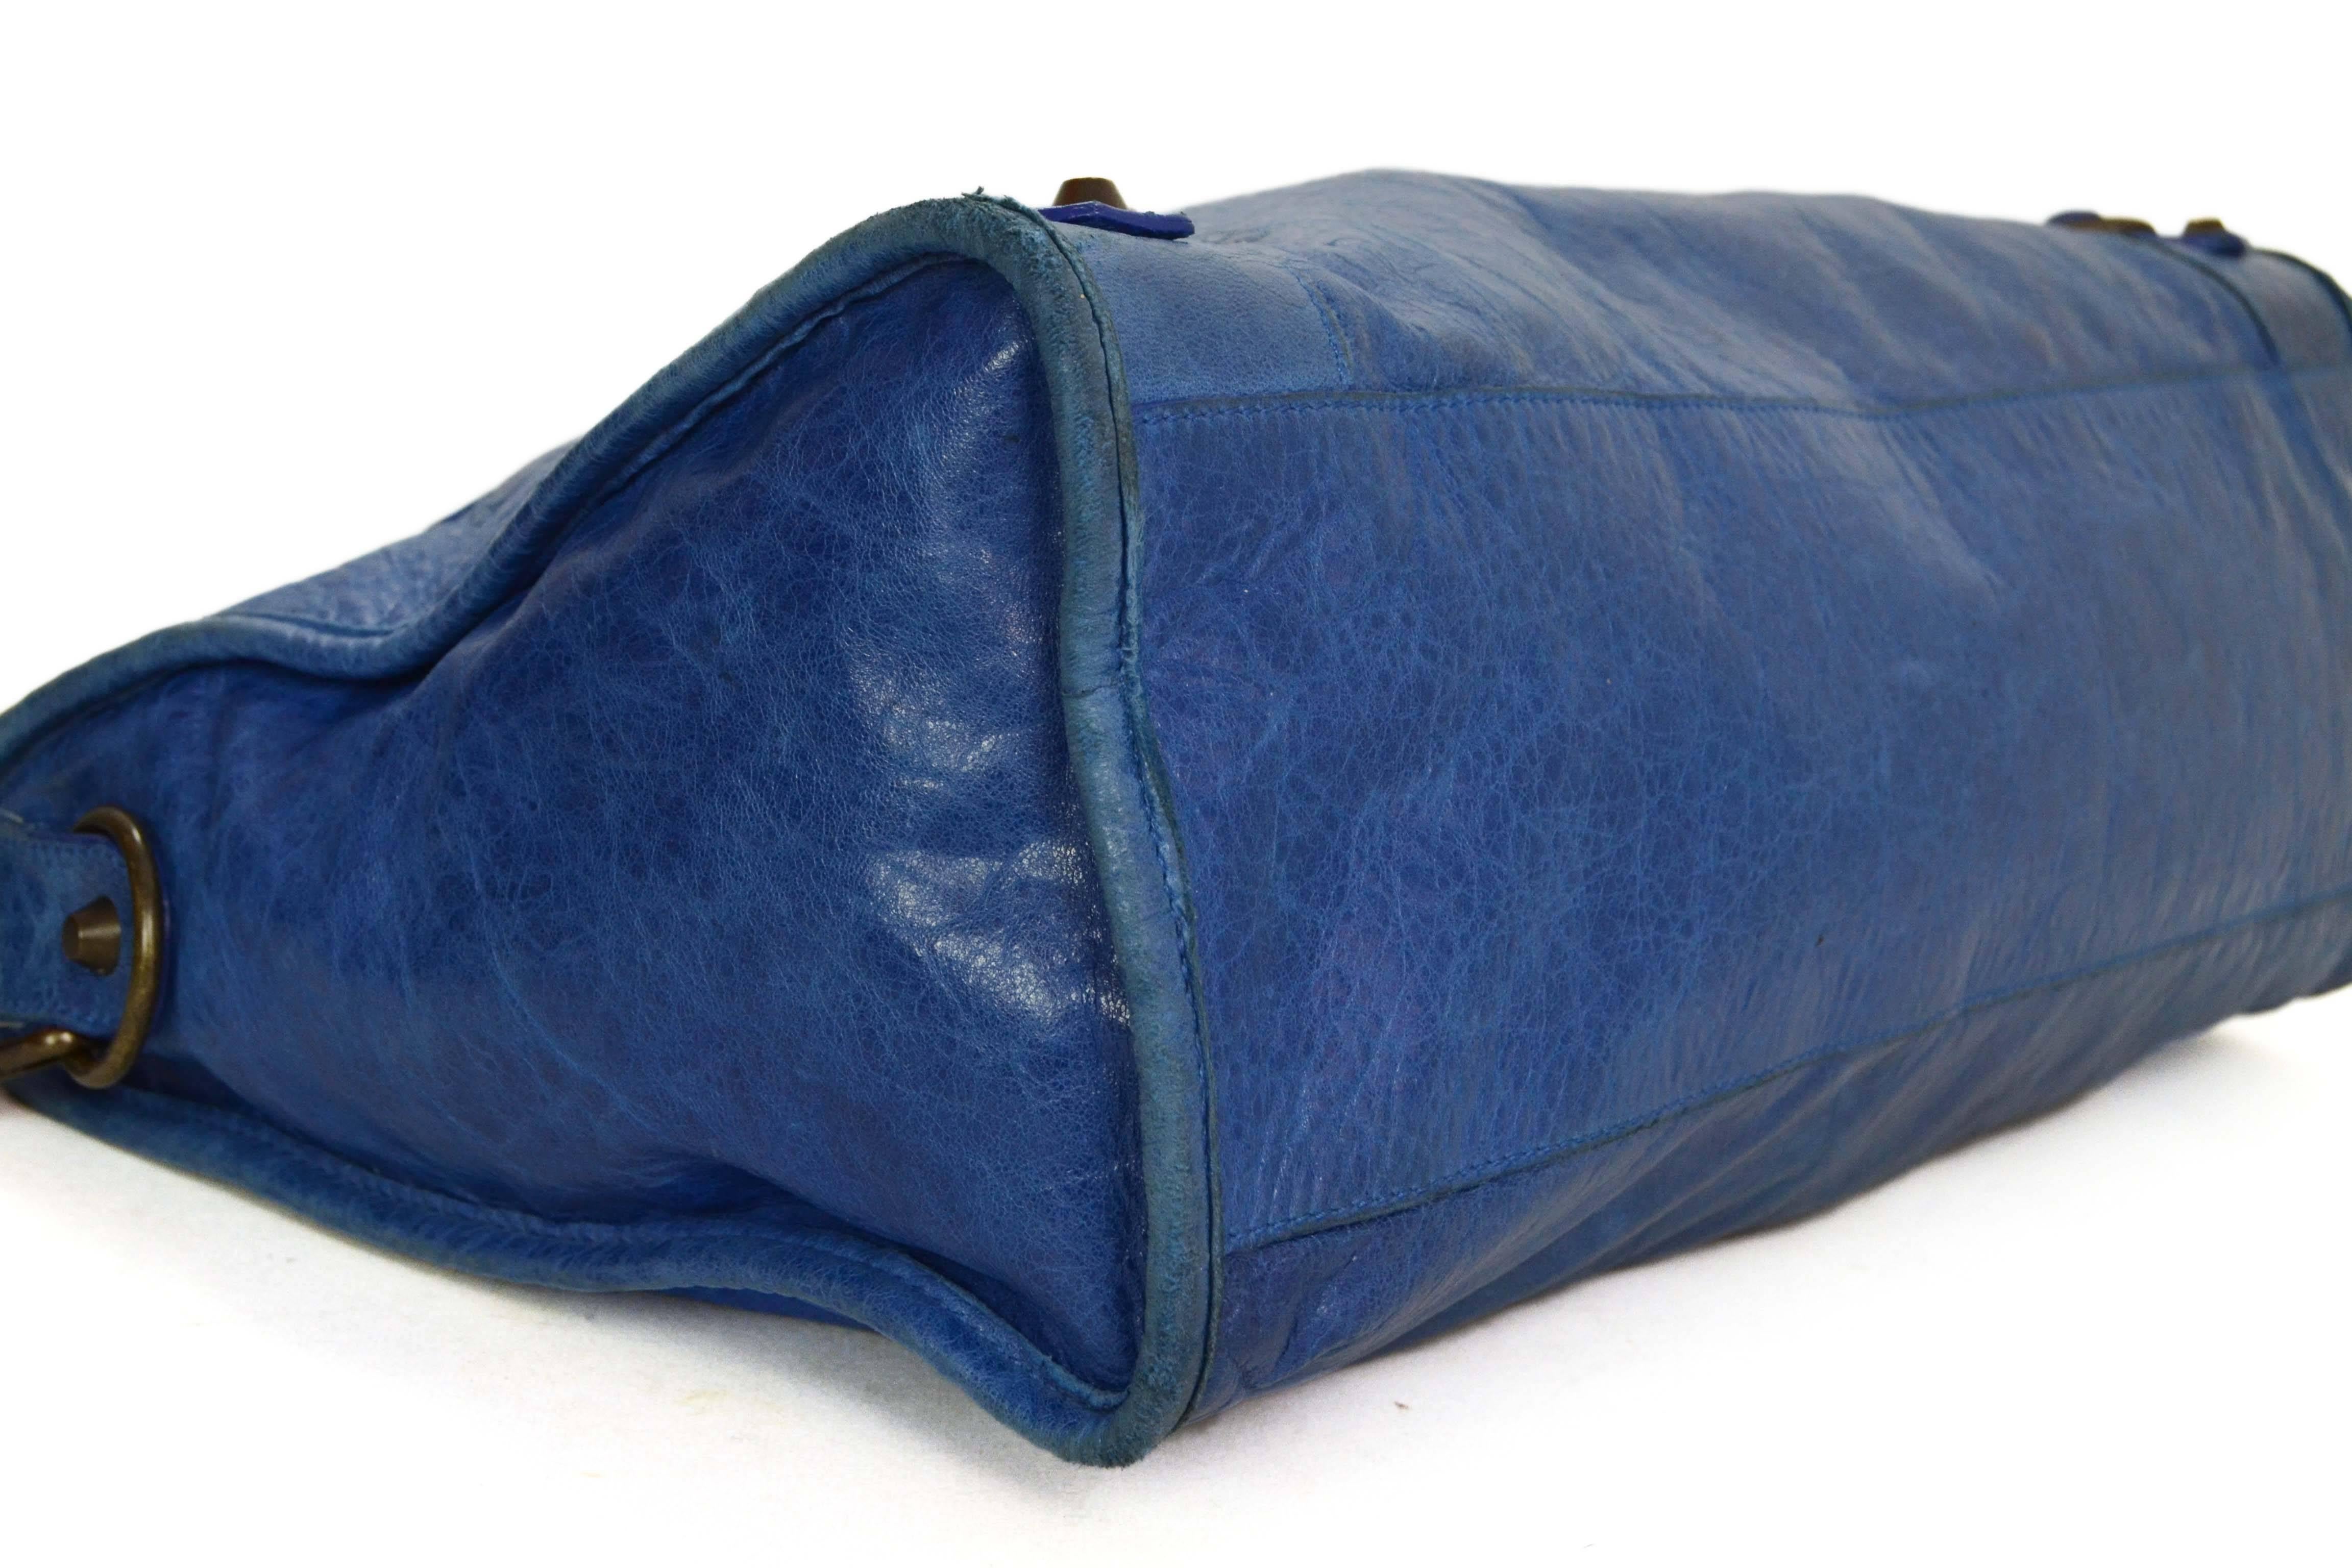 balenciaga blue bag